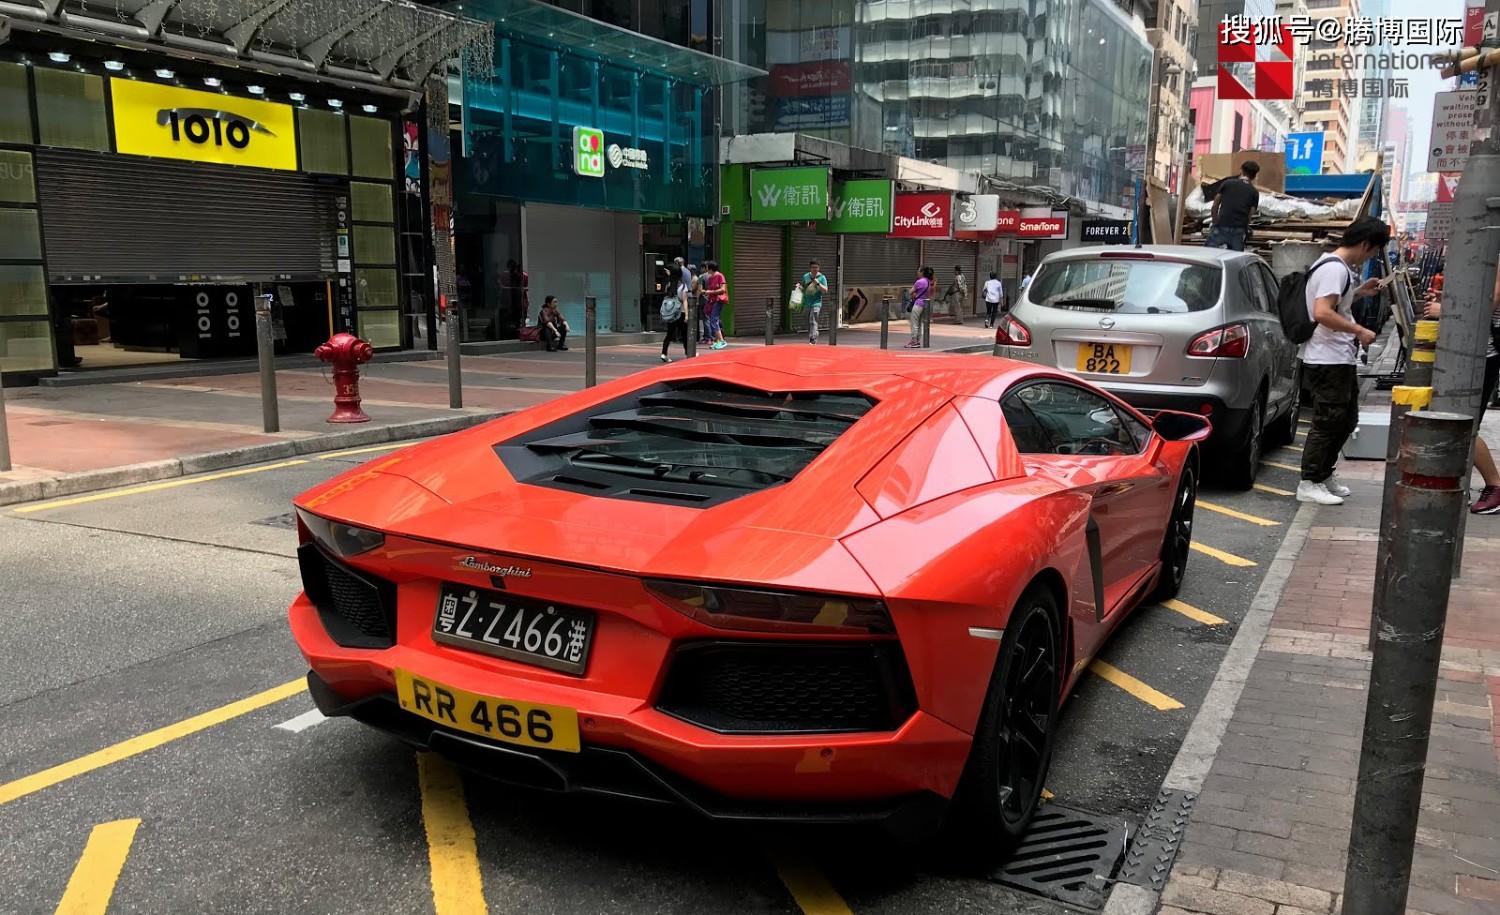 香港，并不只有快节奏，坐上一辆叮叮车，慢慢感受这座多元的城市！